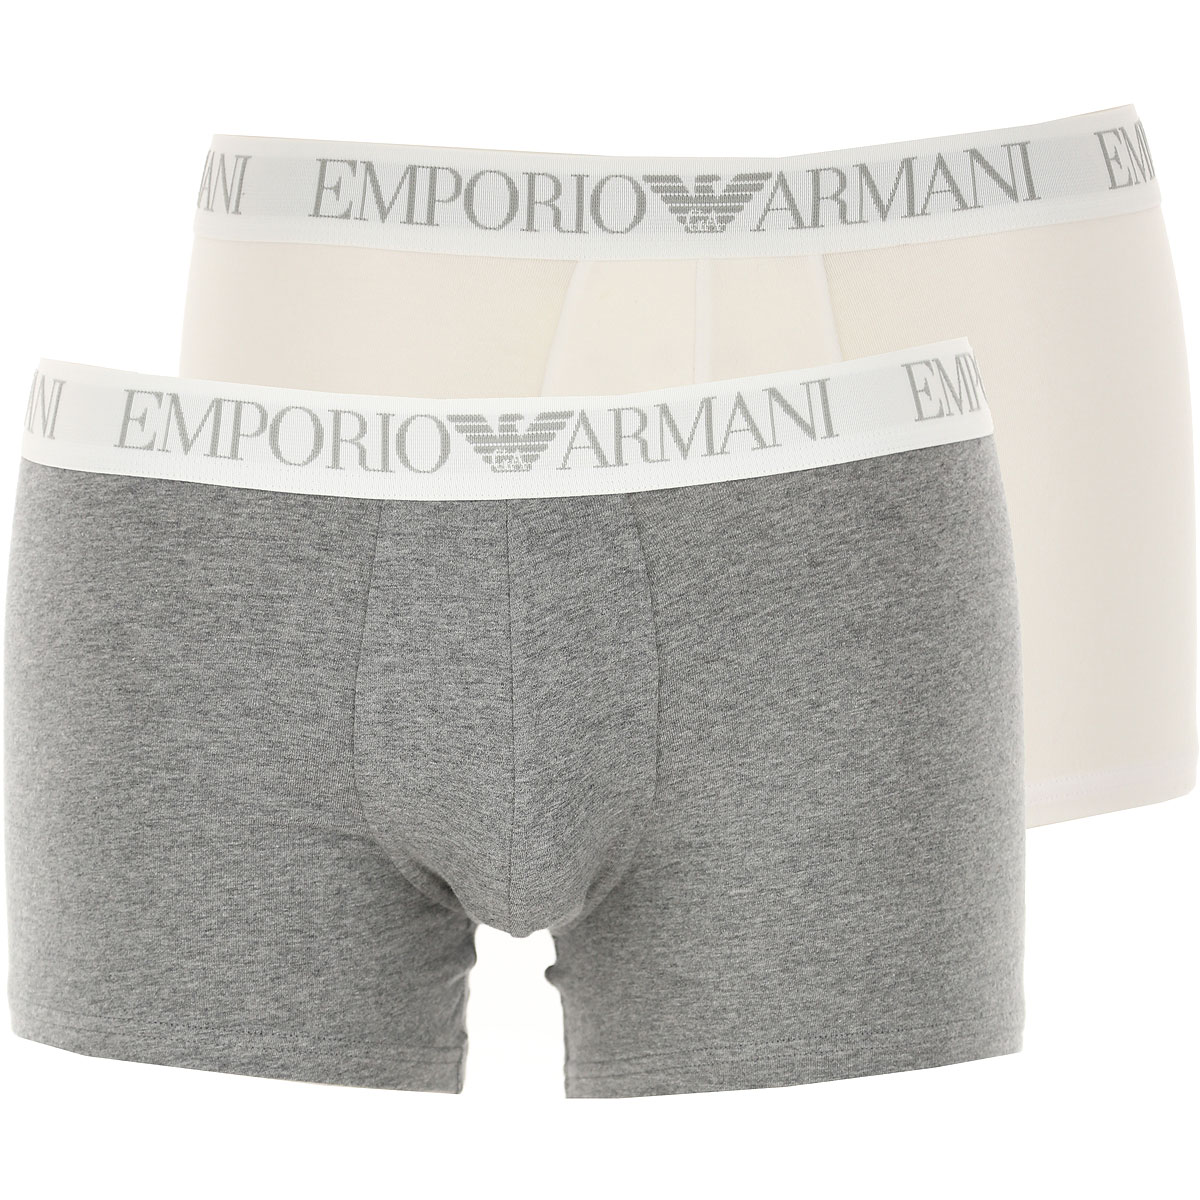 Emporio Armani Boxer Shorts für Herren, Unterhose, Short, Boxer Günstig im Sale, 2 Pack, Weiss, Baumwolle, 2017, M S XL